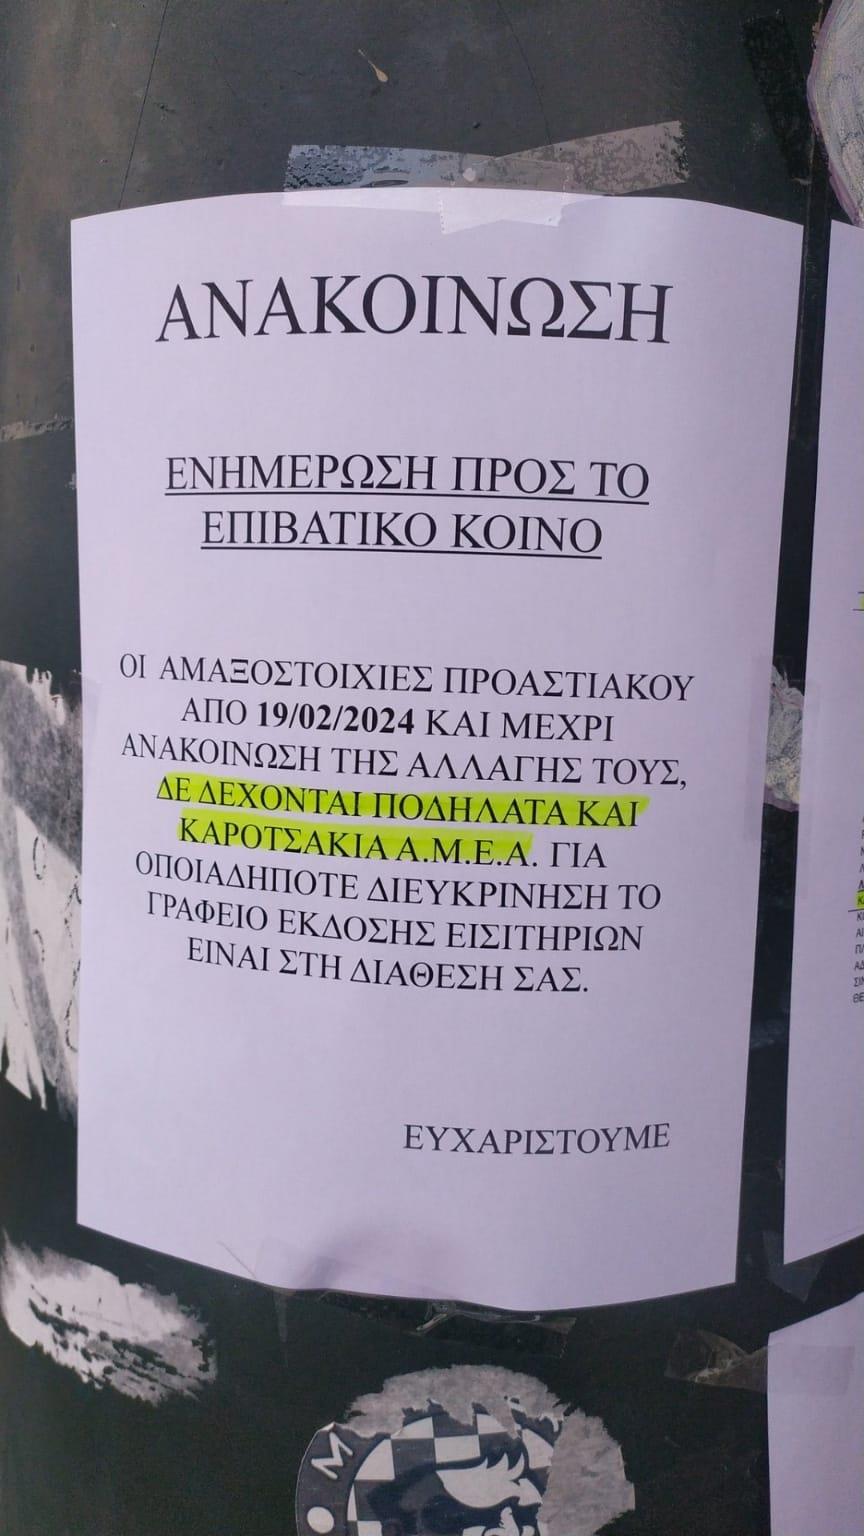 Ανακοίνωση Προαστιακού Θεσσαλονίκης